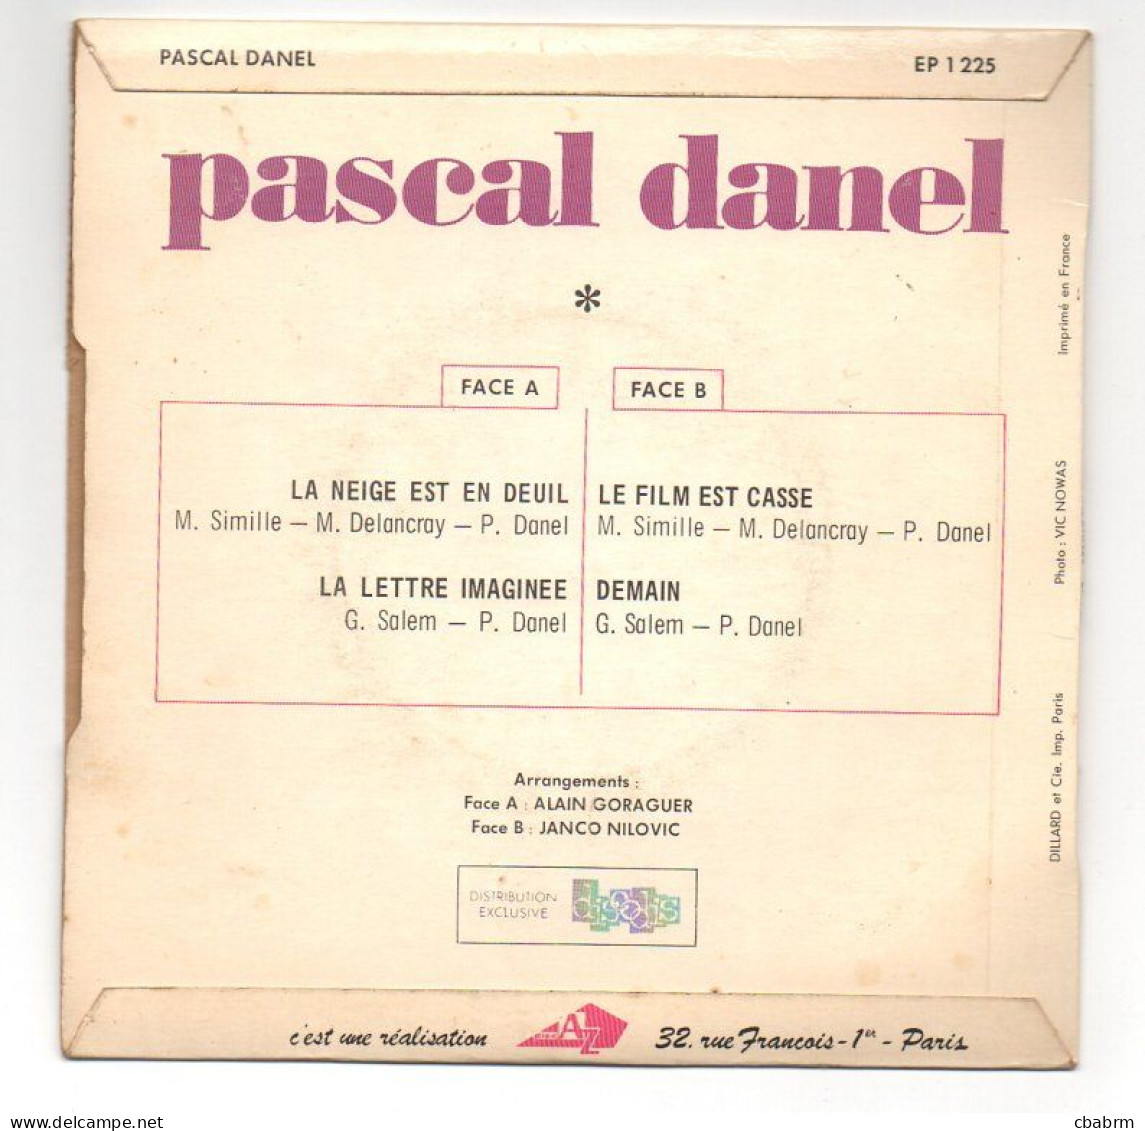 EP 45 TOURS PASCAL DANEL LA NEIGE EST EN DEUIL 1968 FRANCE Disc'Az ‎ EP 1225 - Altri - Francese